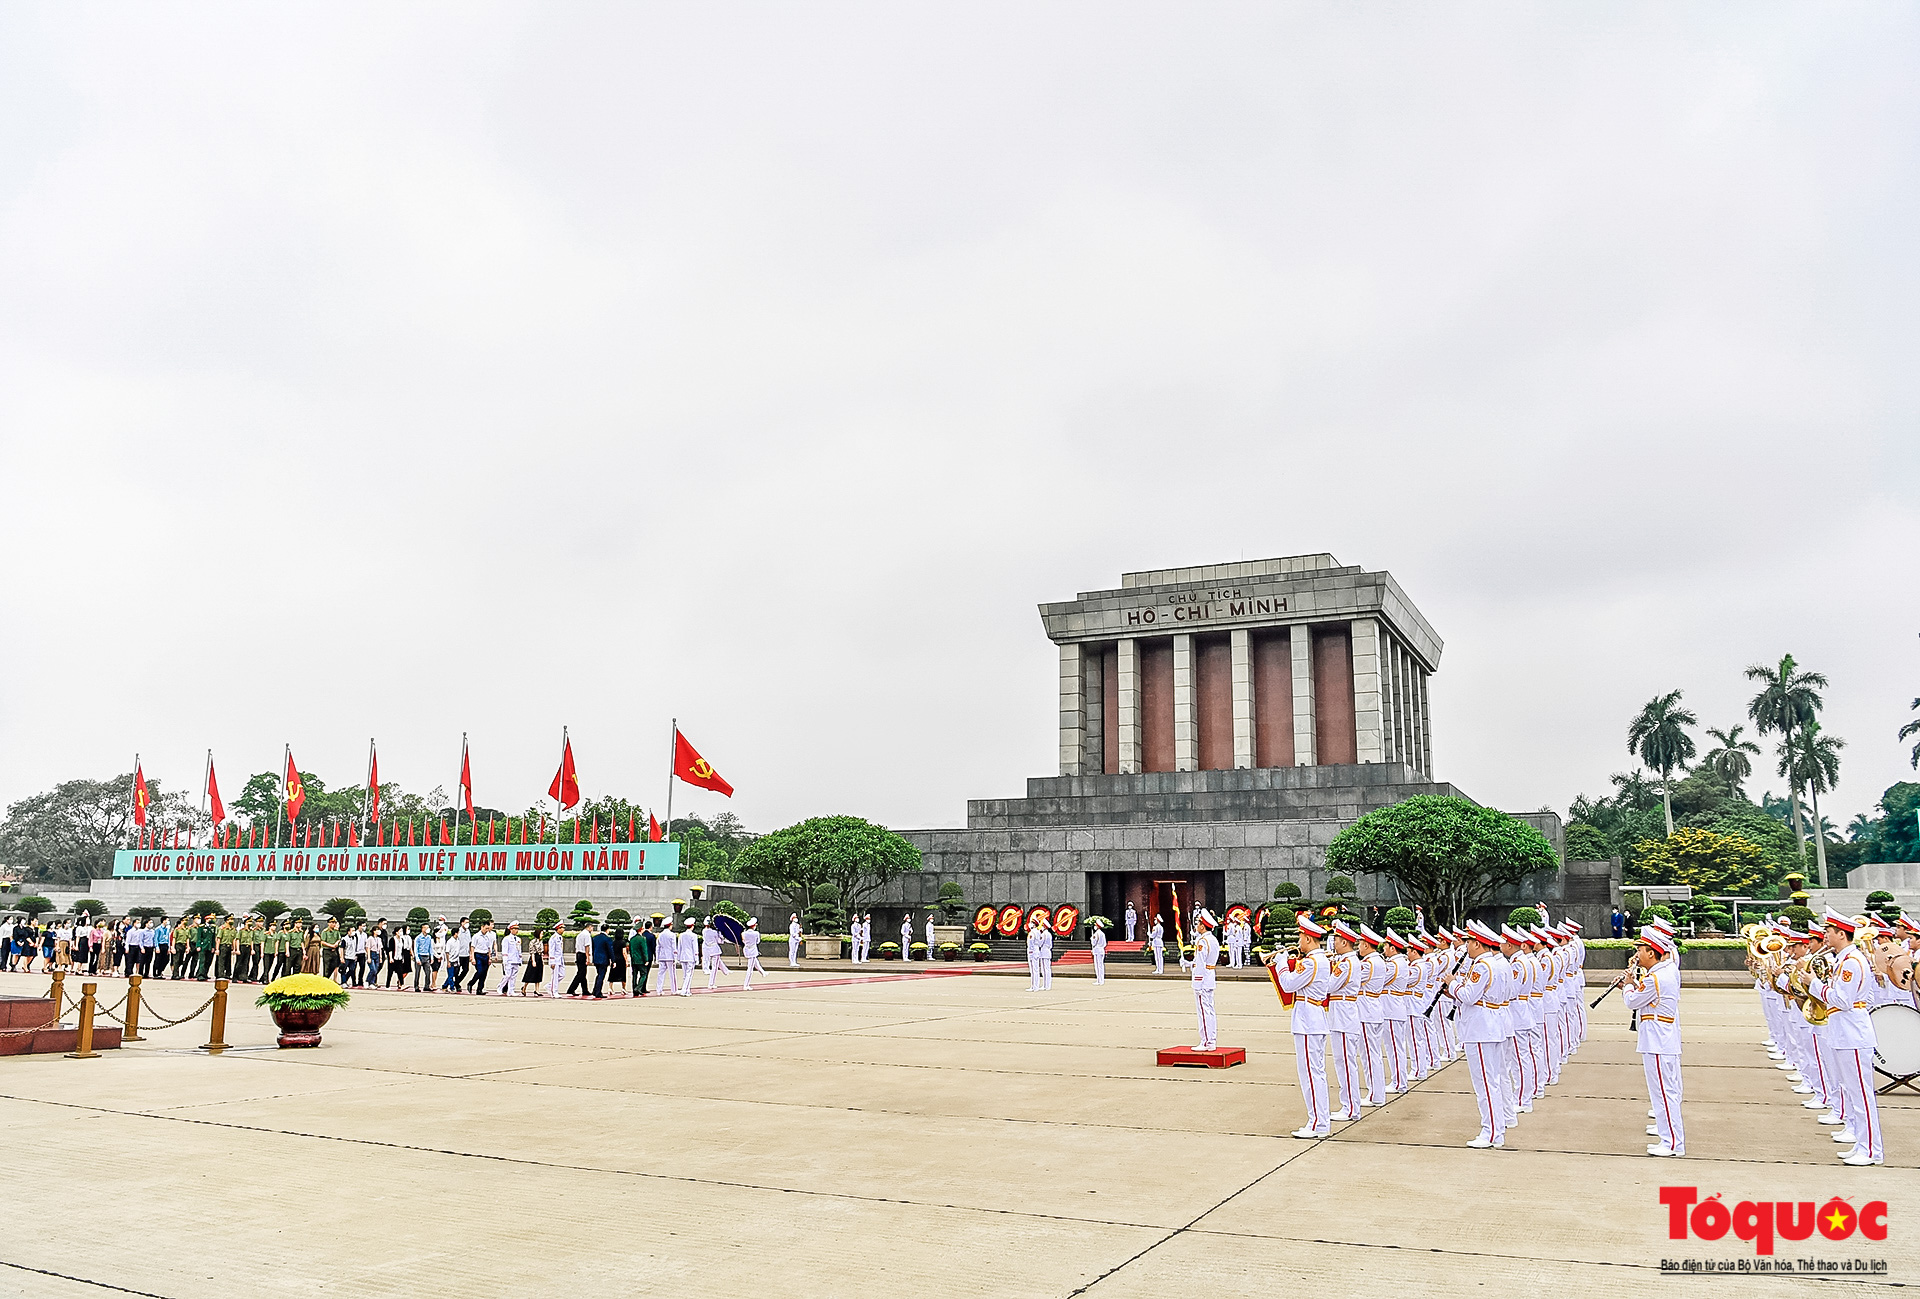 Lãnh đạo Đảng, Nhà nước viếng lăng Chủ tịch Hồ Chí Minh - Ảnh 1.